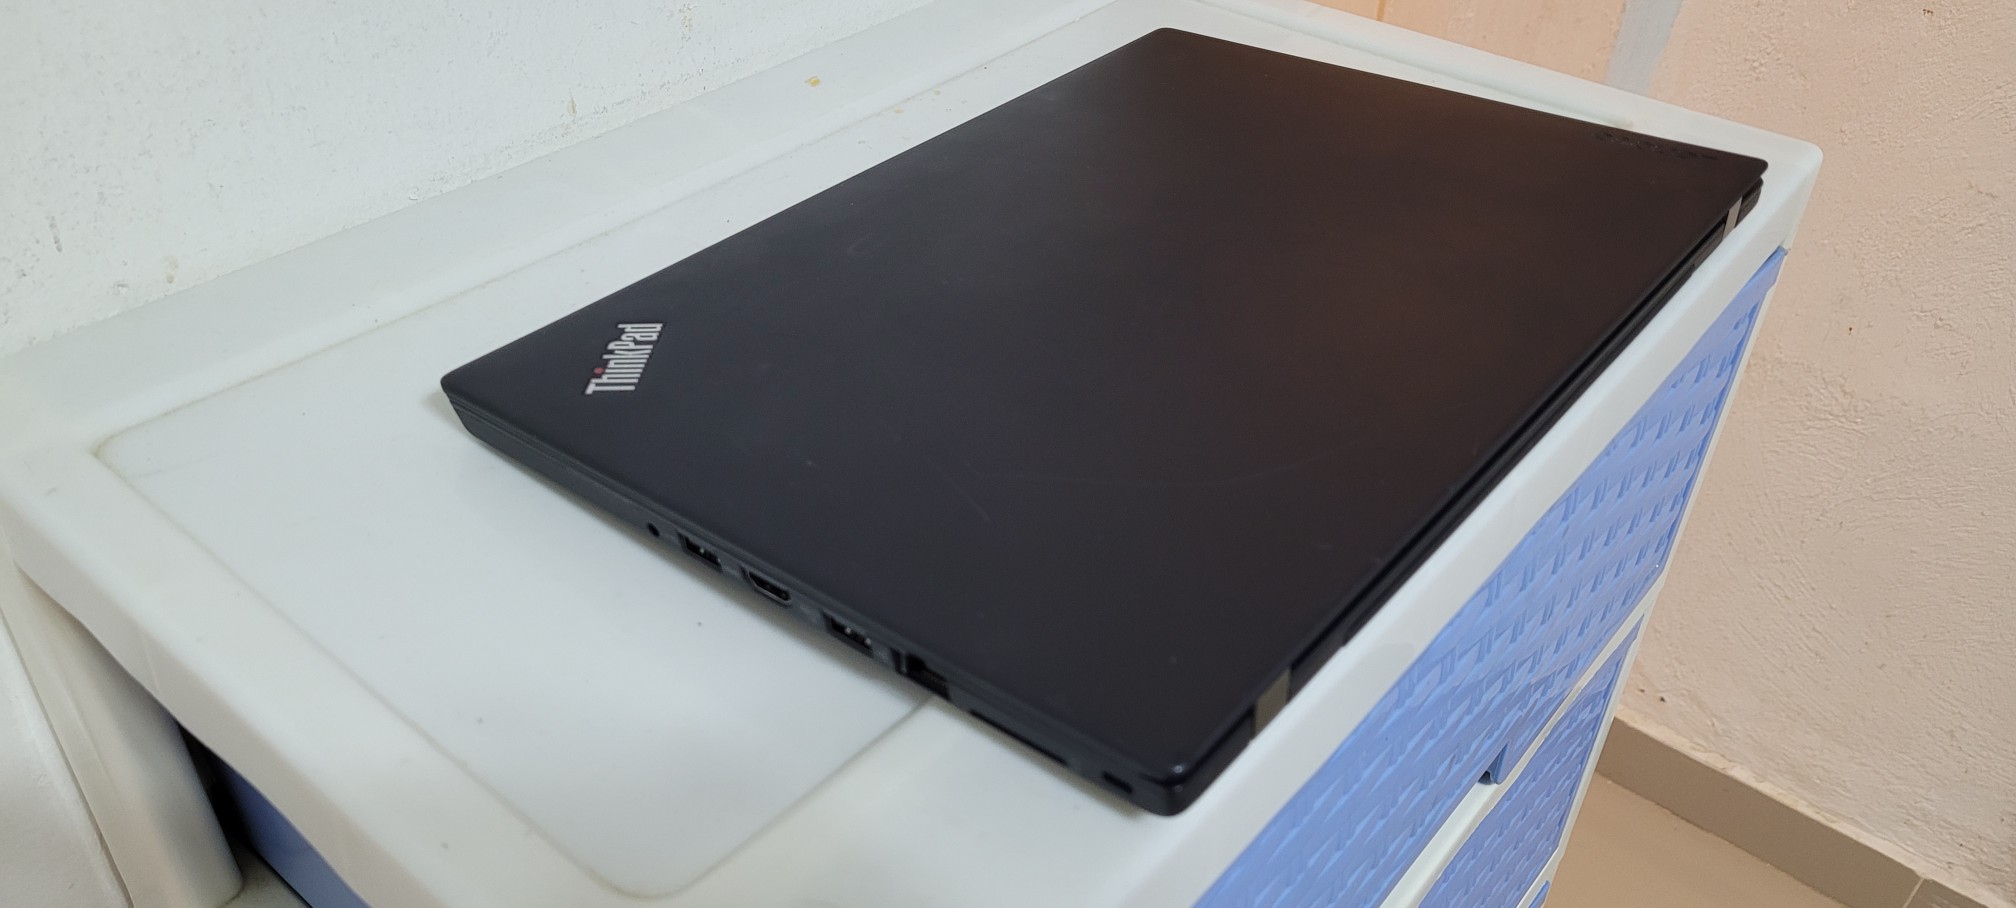 computadoras y laptops - Lenovo T470 14 Pulg Core i7 7ma Ram 12gb Disco 256gb SSD Video 6gb 2